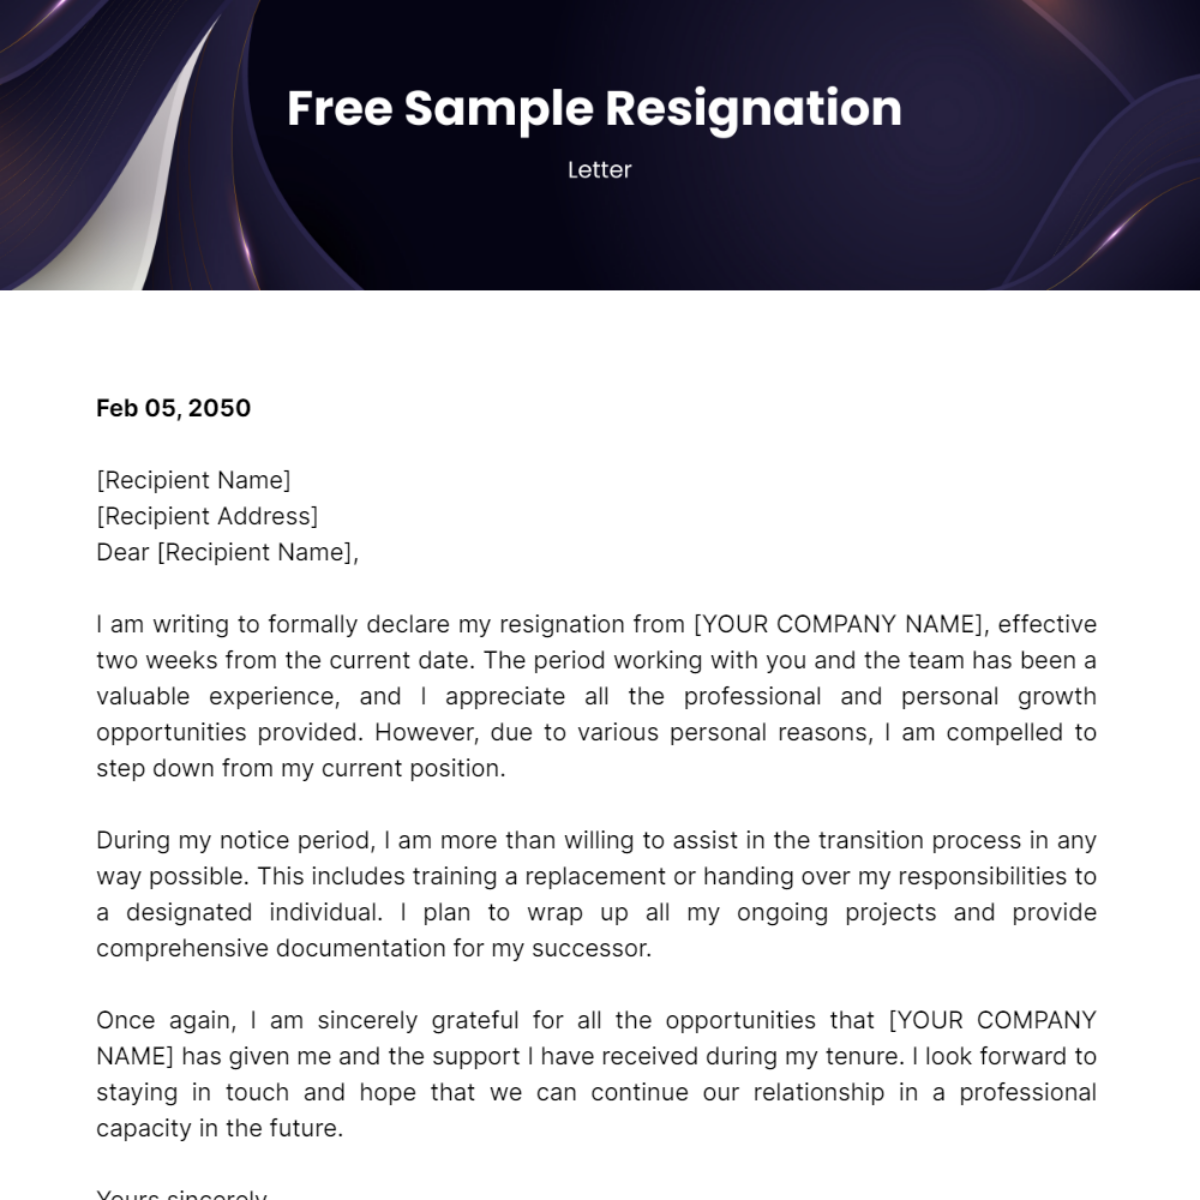 Sample Resignation Letter Template